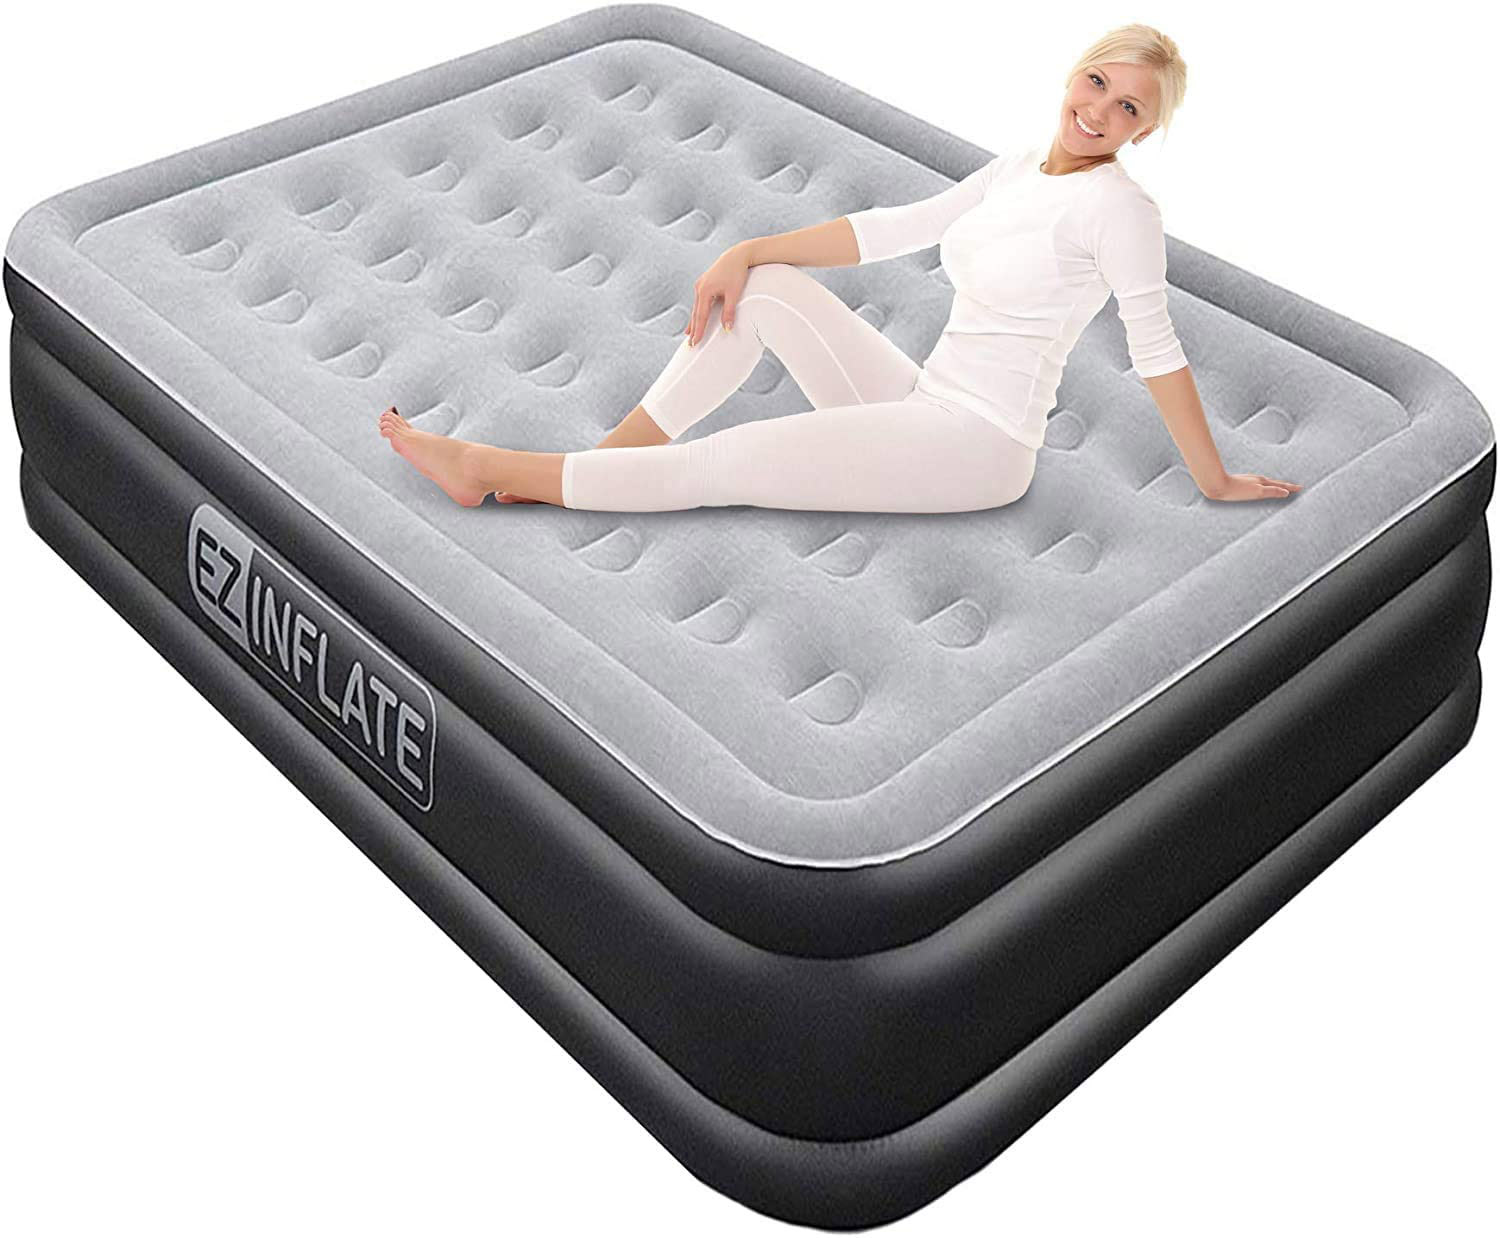 camping air mattress skagit